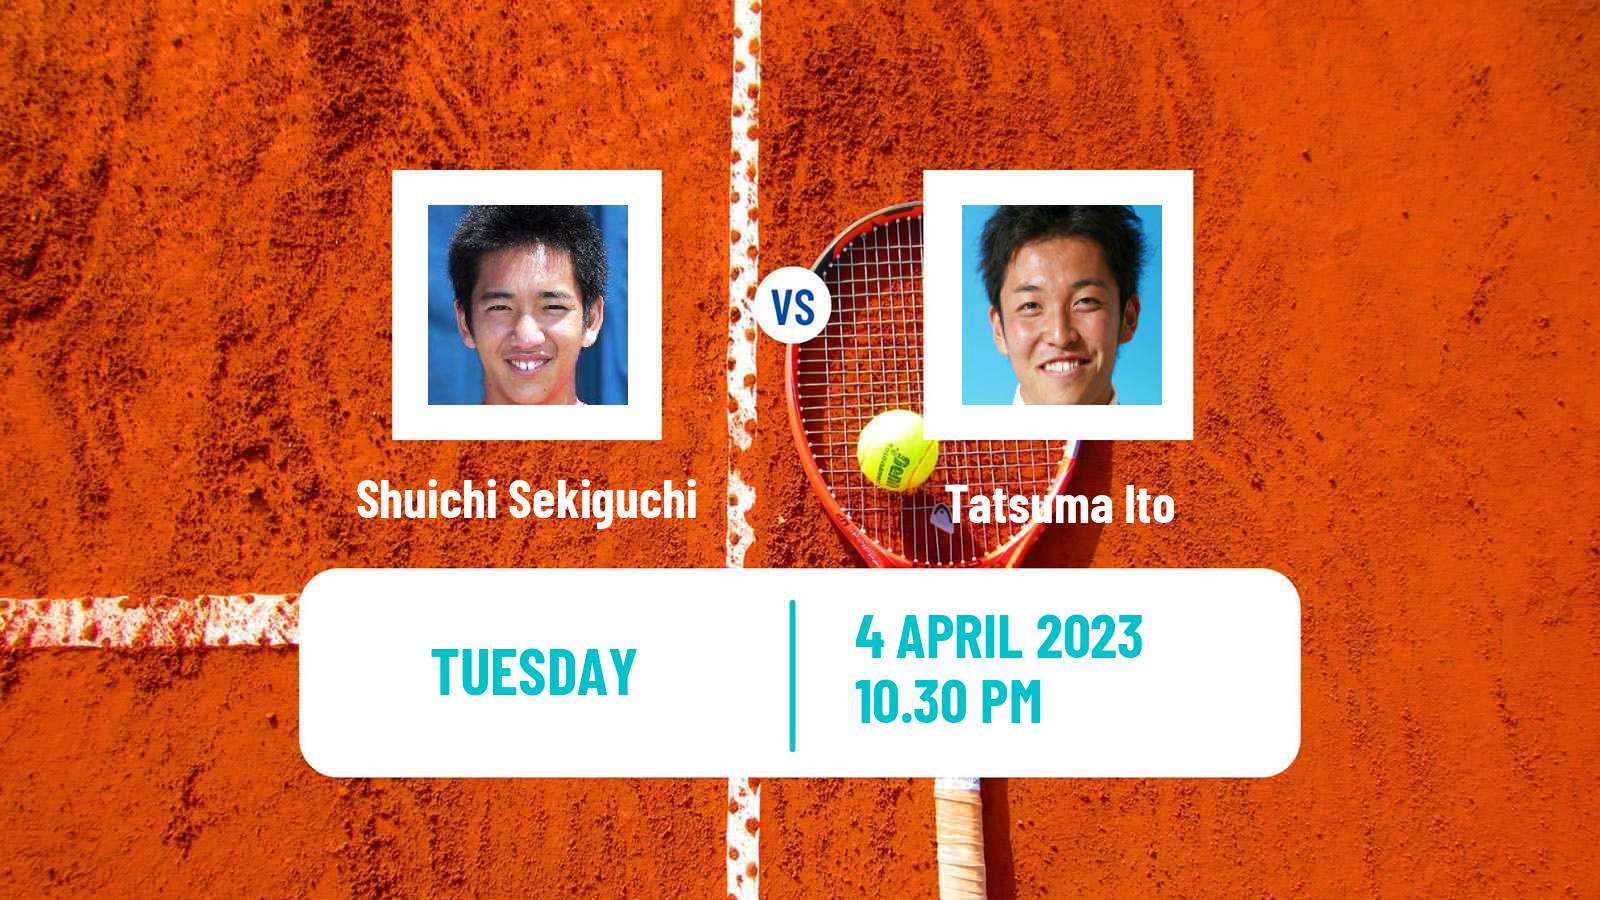 Tennis ITF Tournaments Shuichi Sekiguchi - Tatsuma Ito